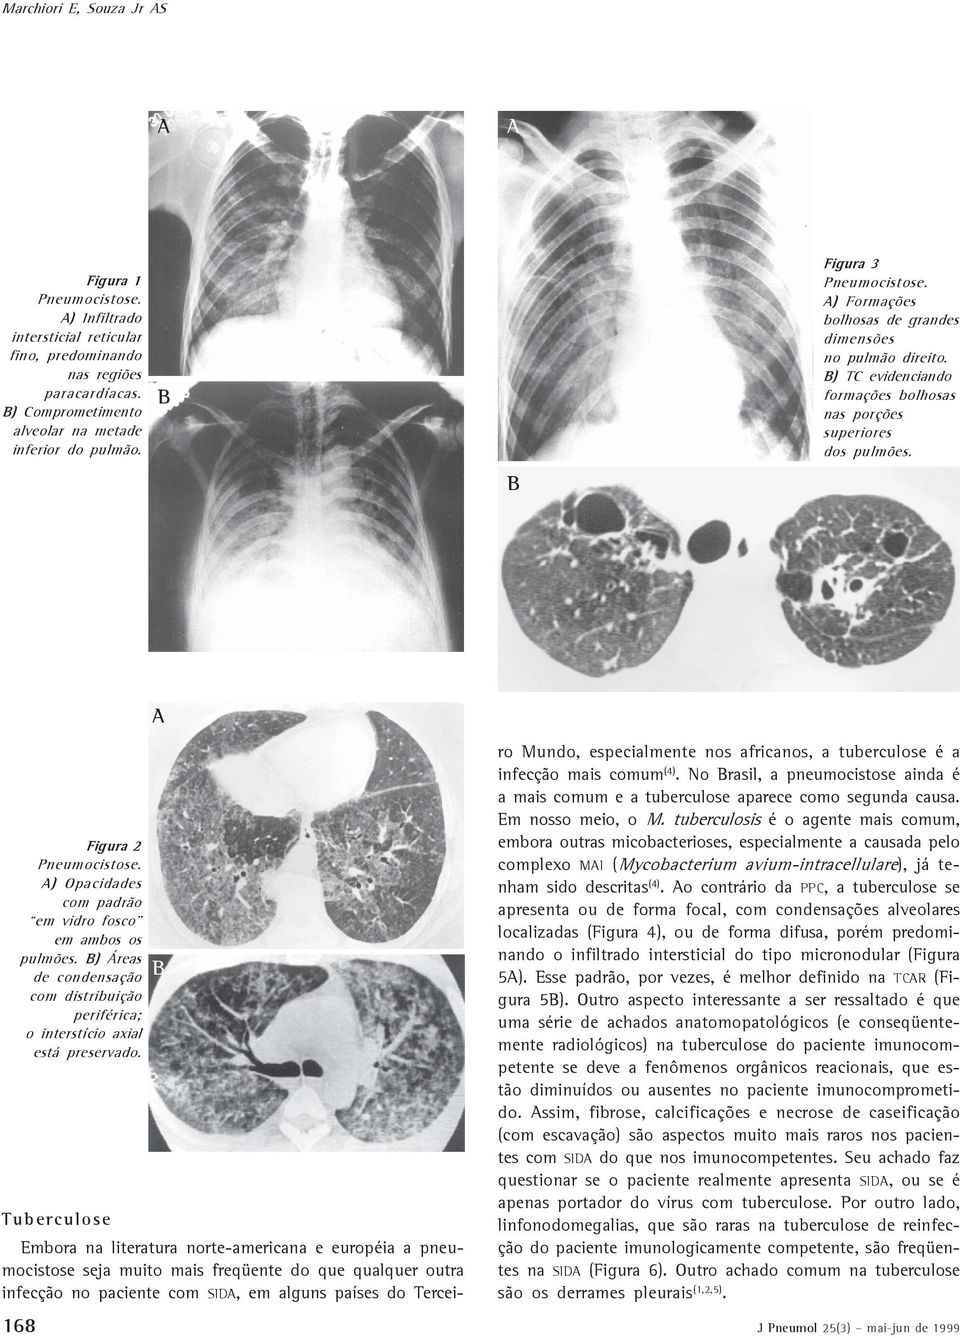 ) Opacidades com padrão em vidro fosco em ambos os pulmões. ) Áreas de condensação com distribuição periférica; o interstício axial está preservado.